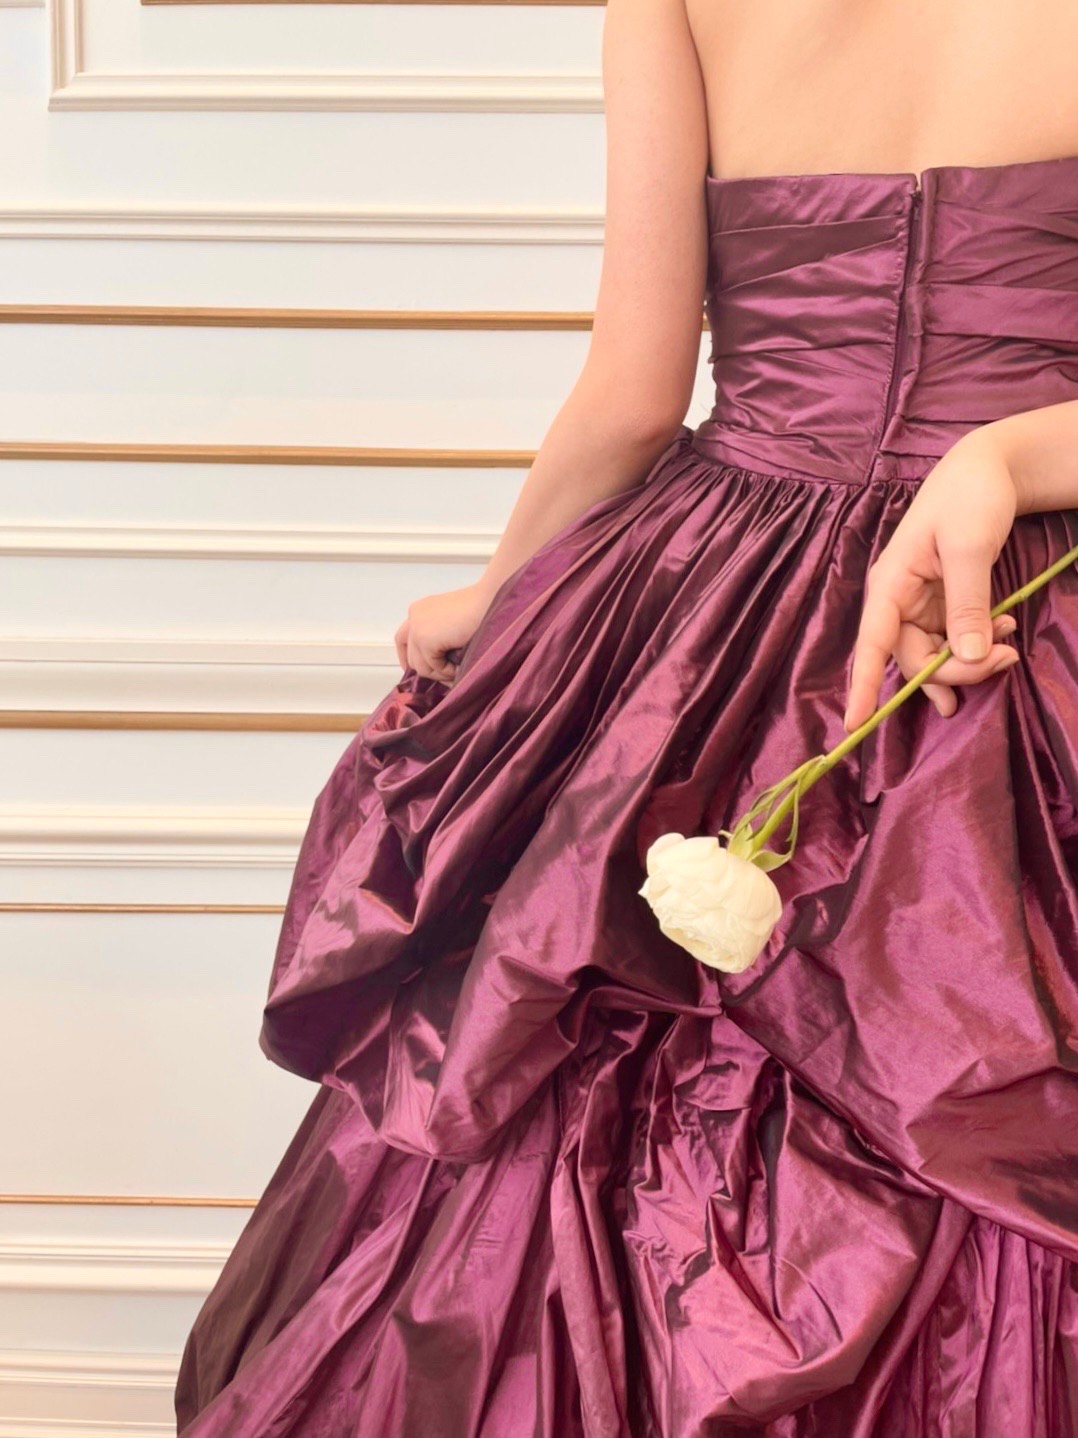 パープルのカラードレスを探している方におすすめのリーフフォーブライズのシルクの光沢が華やかなAラインのカラードレス